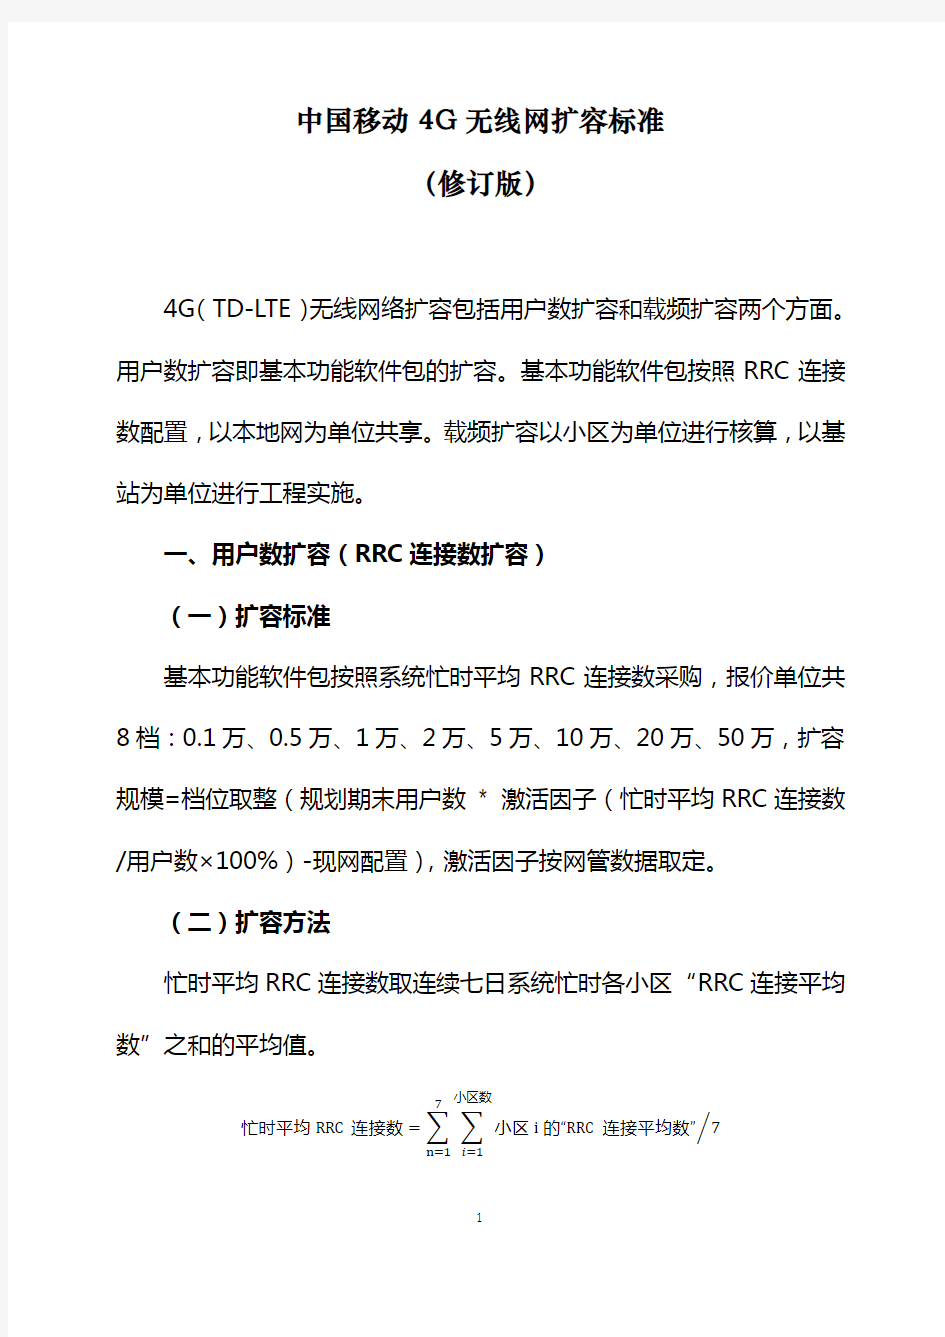 中国移动4G无线网扩容标准(修订版)